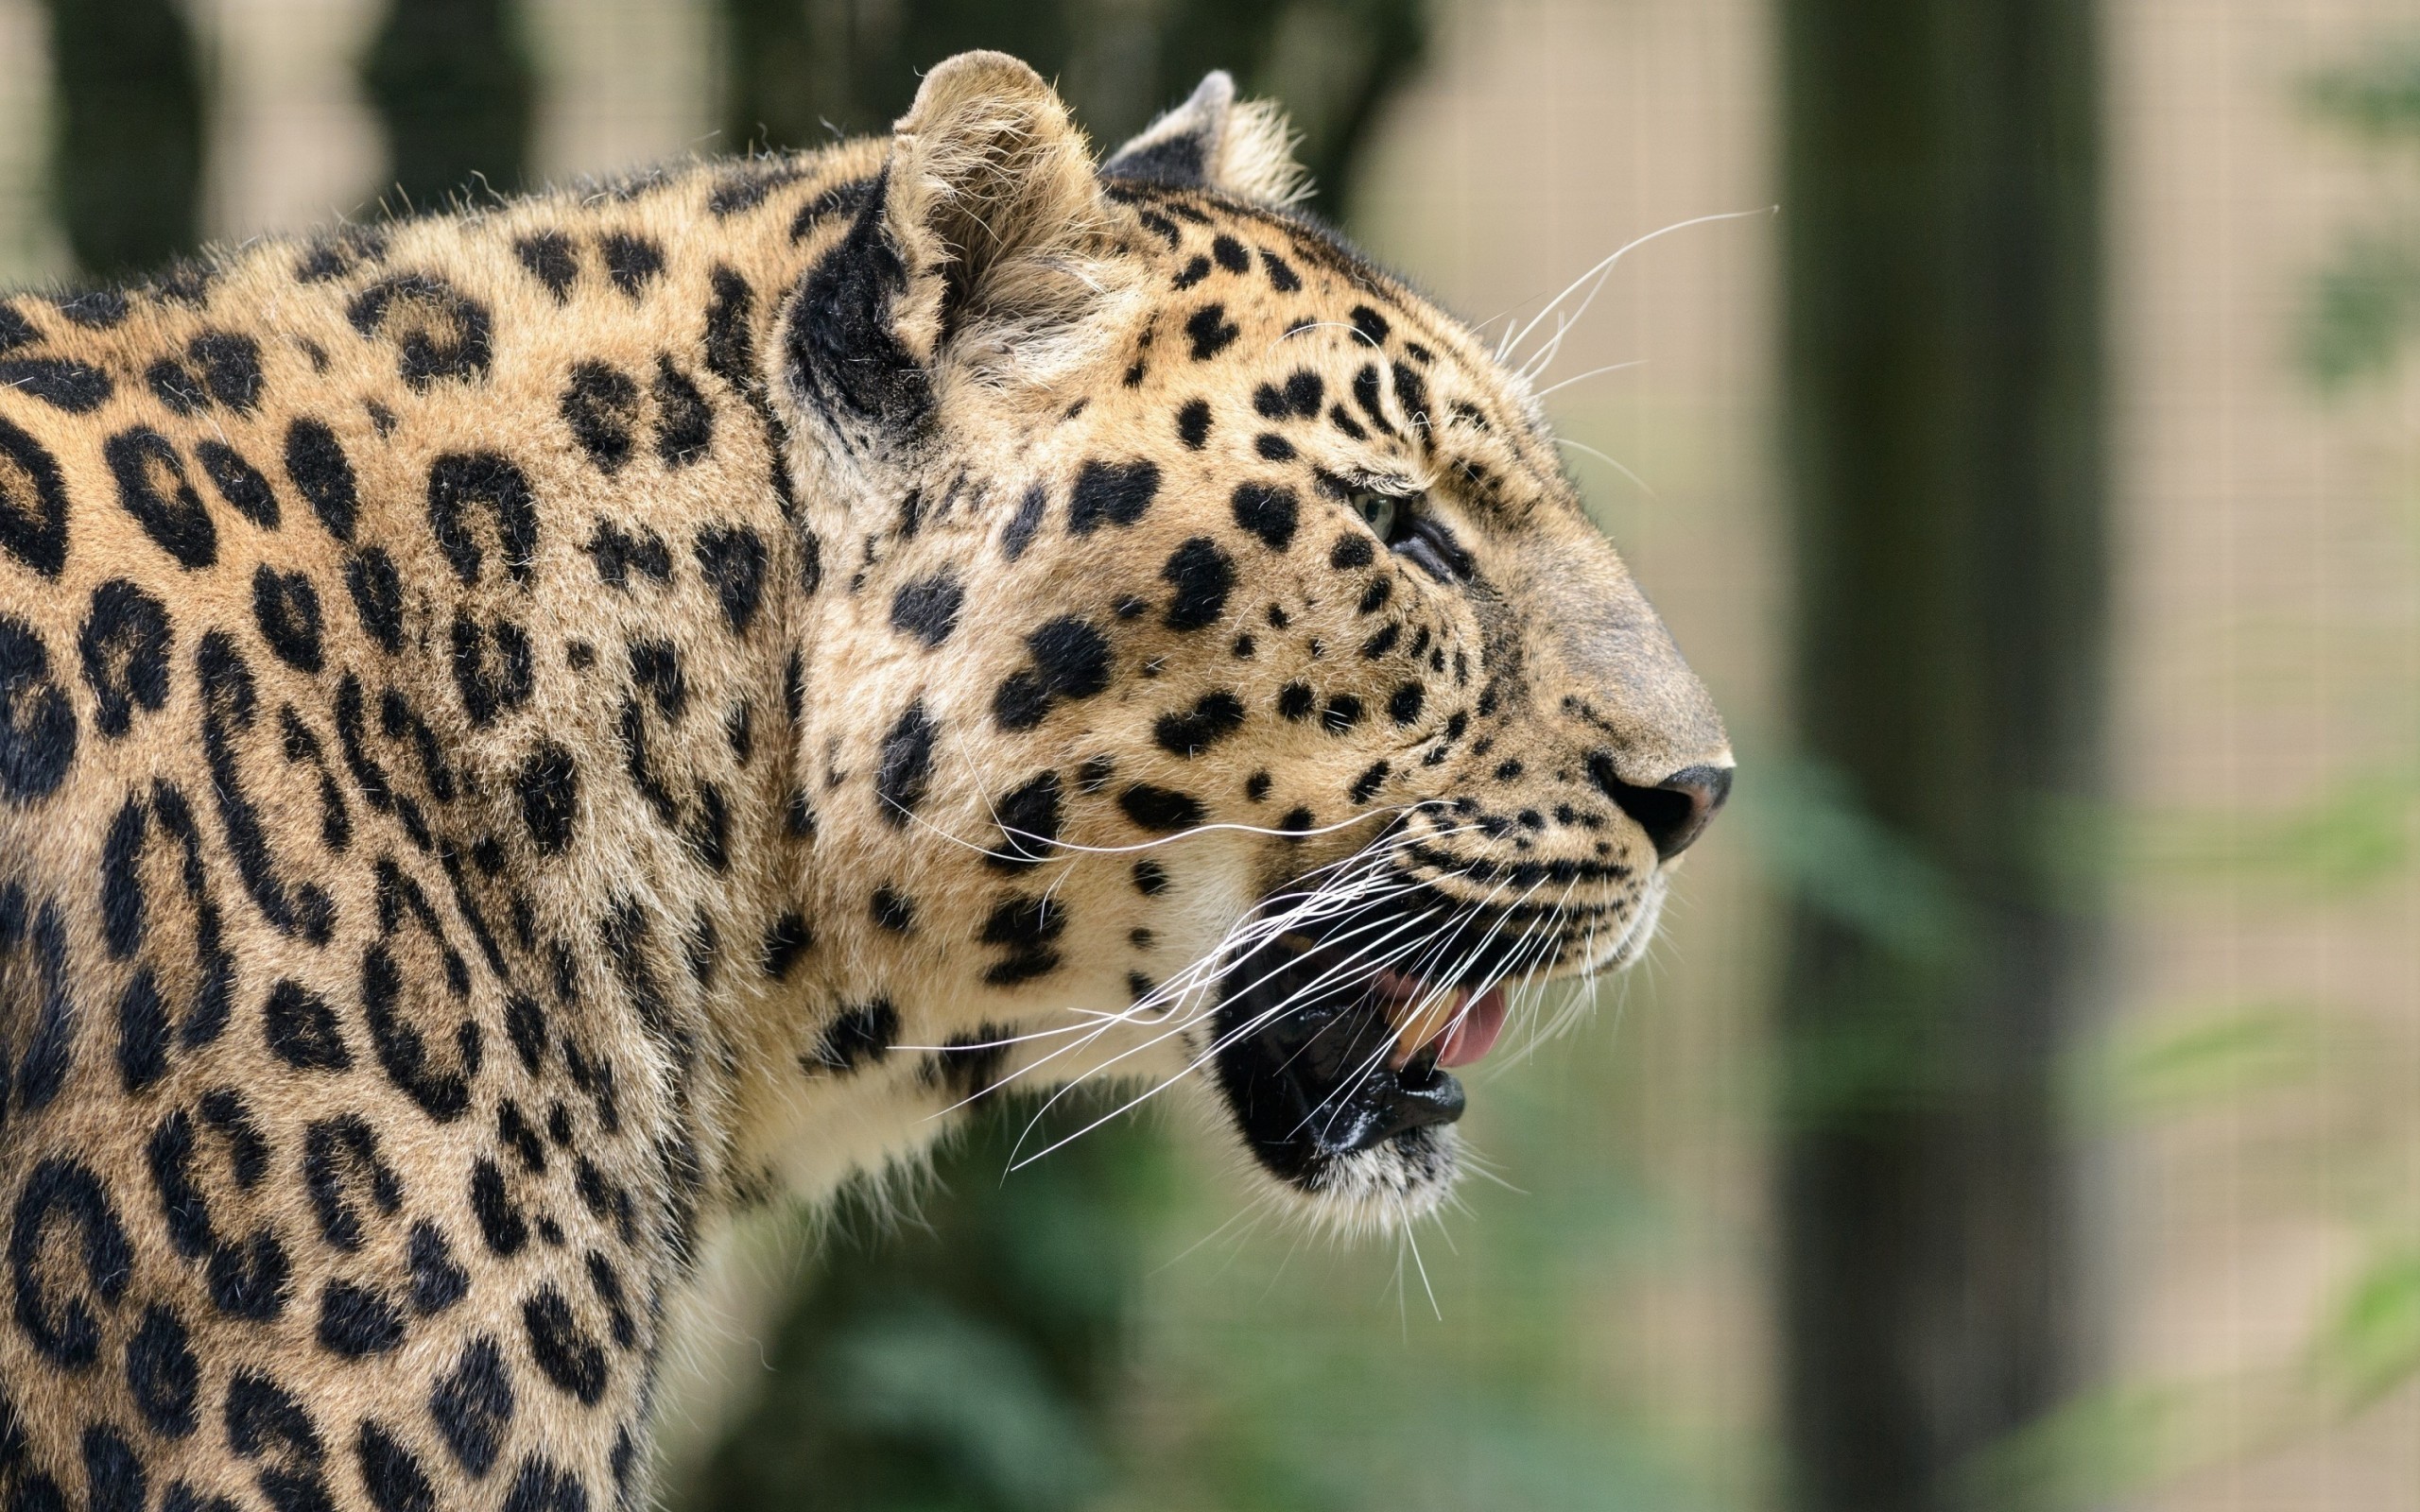 General 2560x1600 animals leopard mammals nature big cats closeup